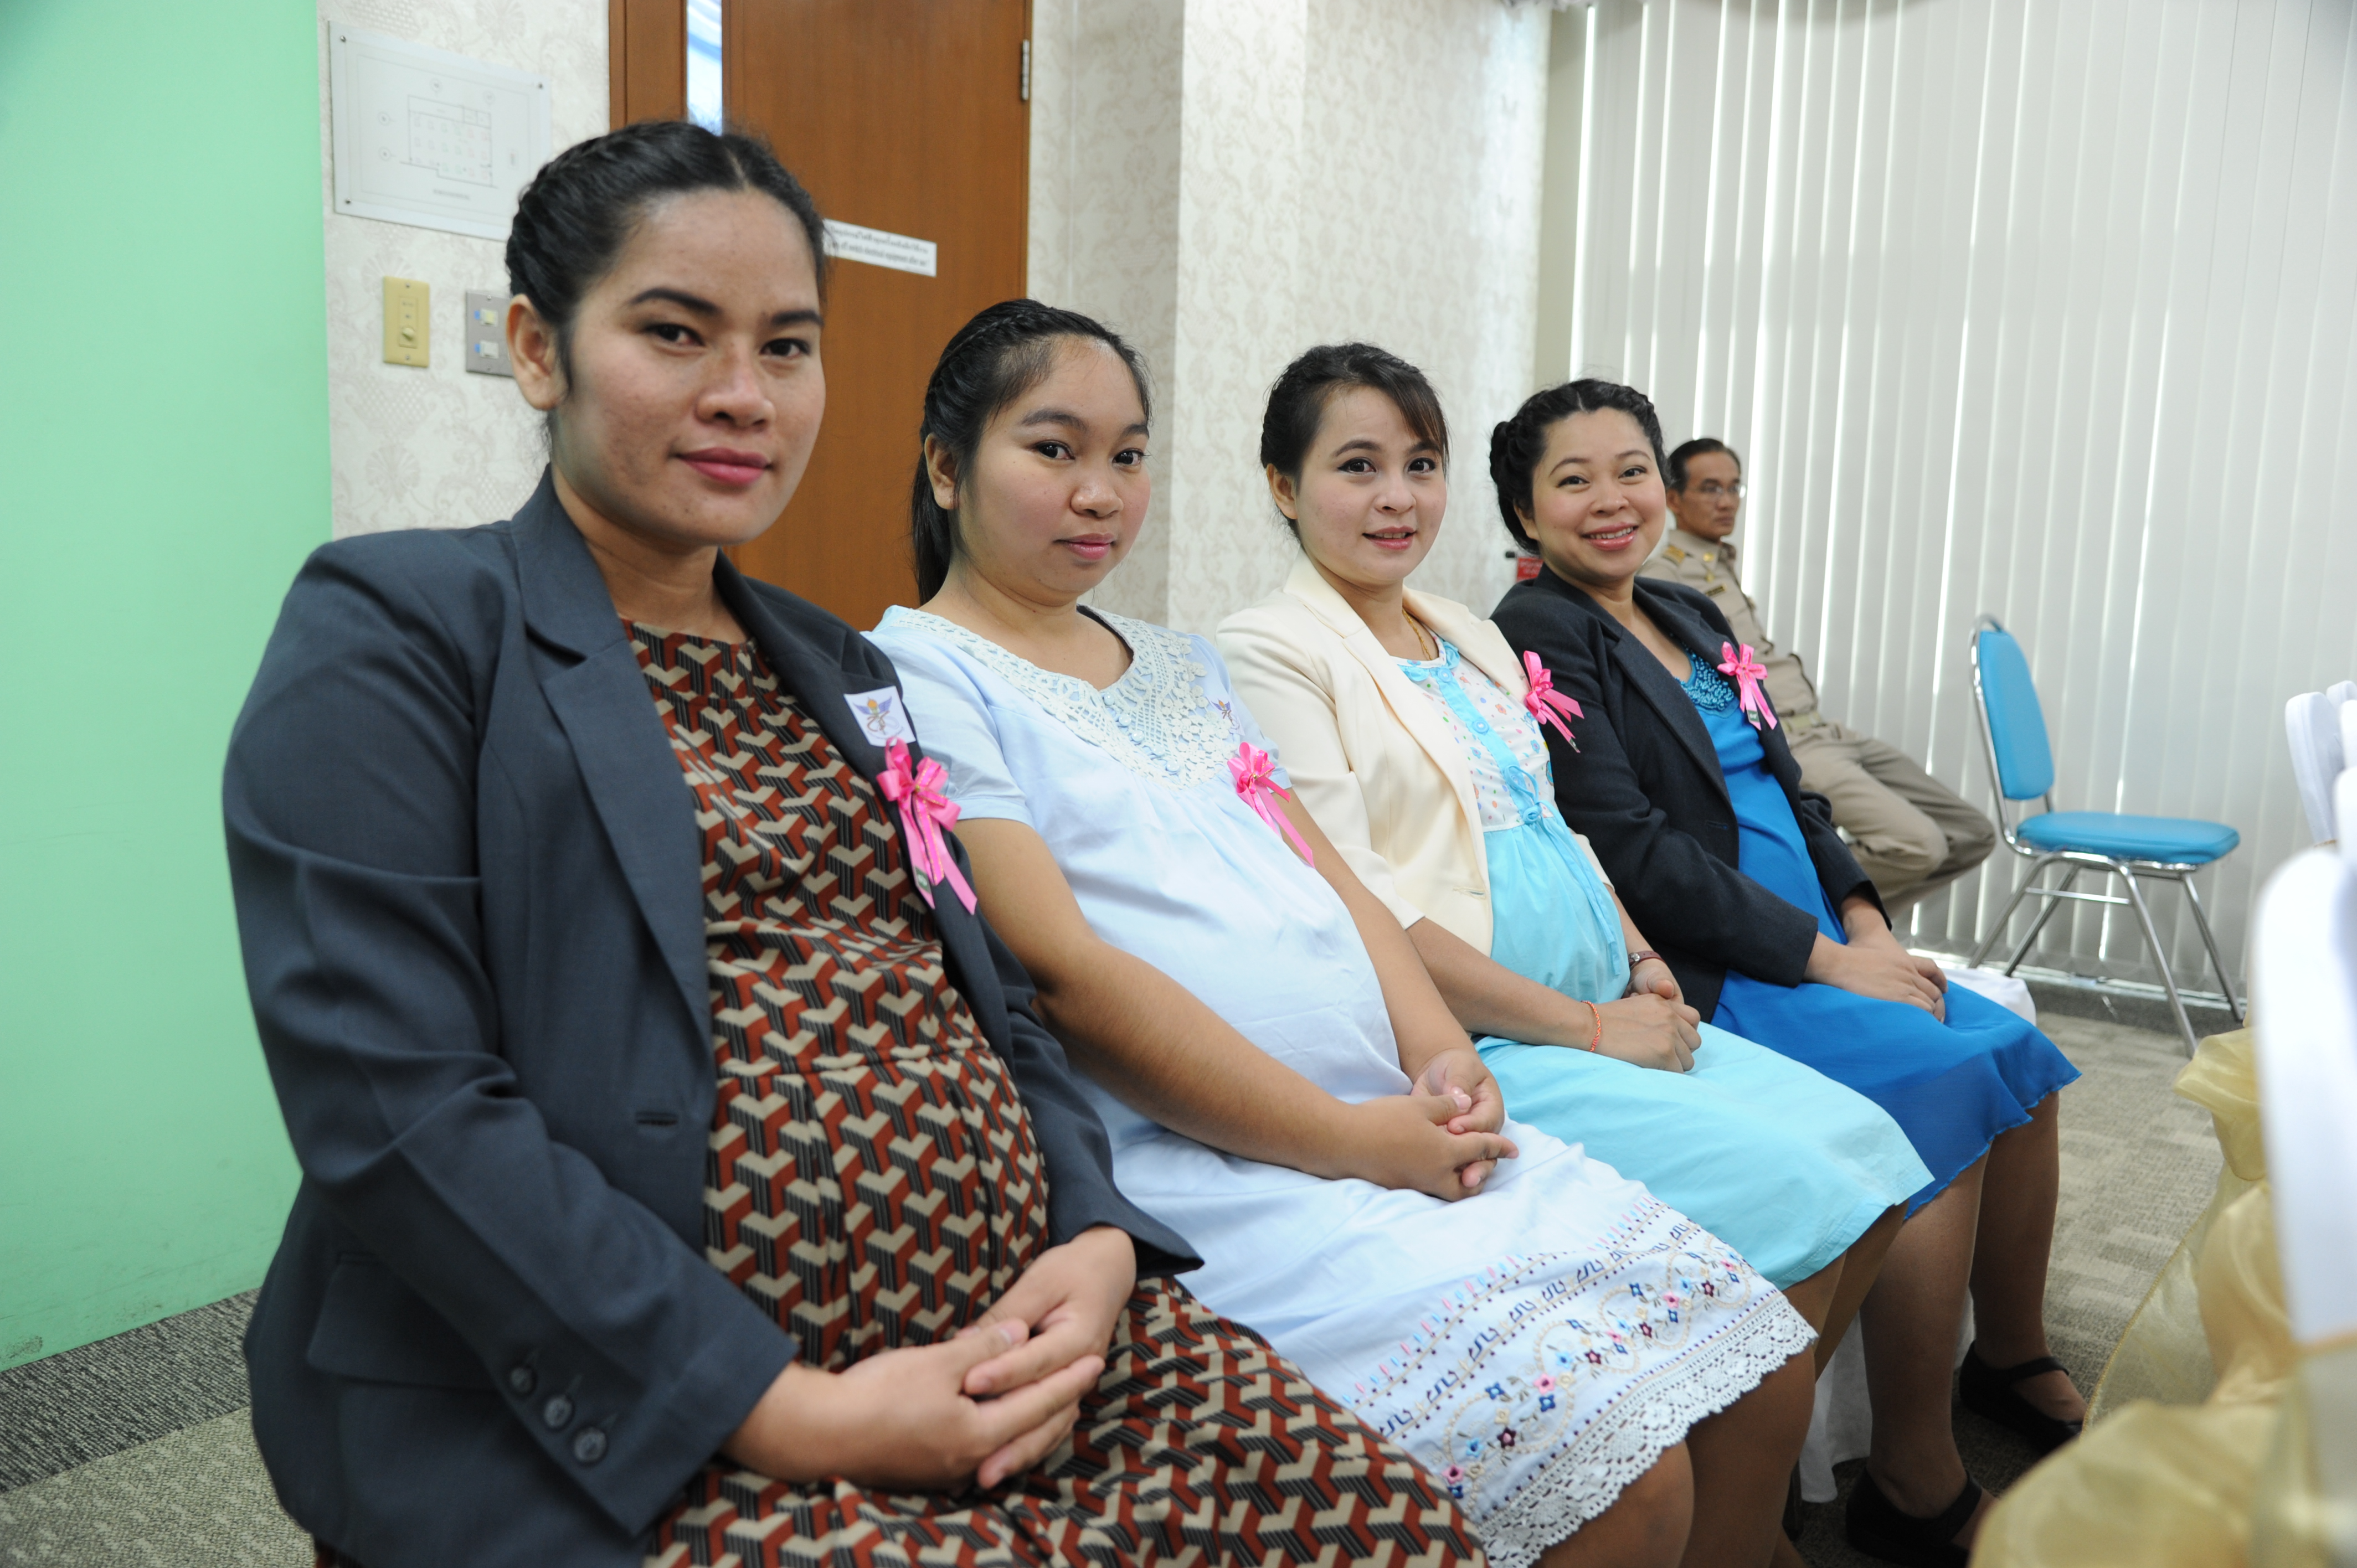 สถานประกอบการ หนุนแม่เลี้ยงลูกด้วยนมแม่ thaihealth